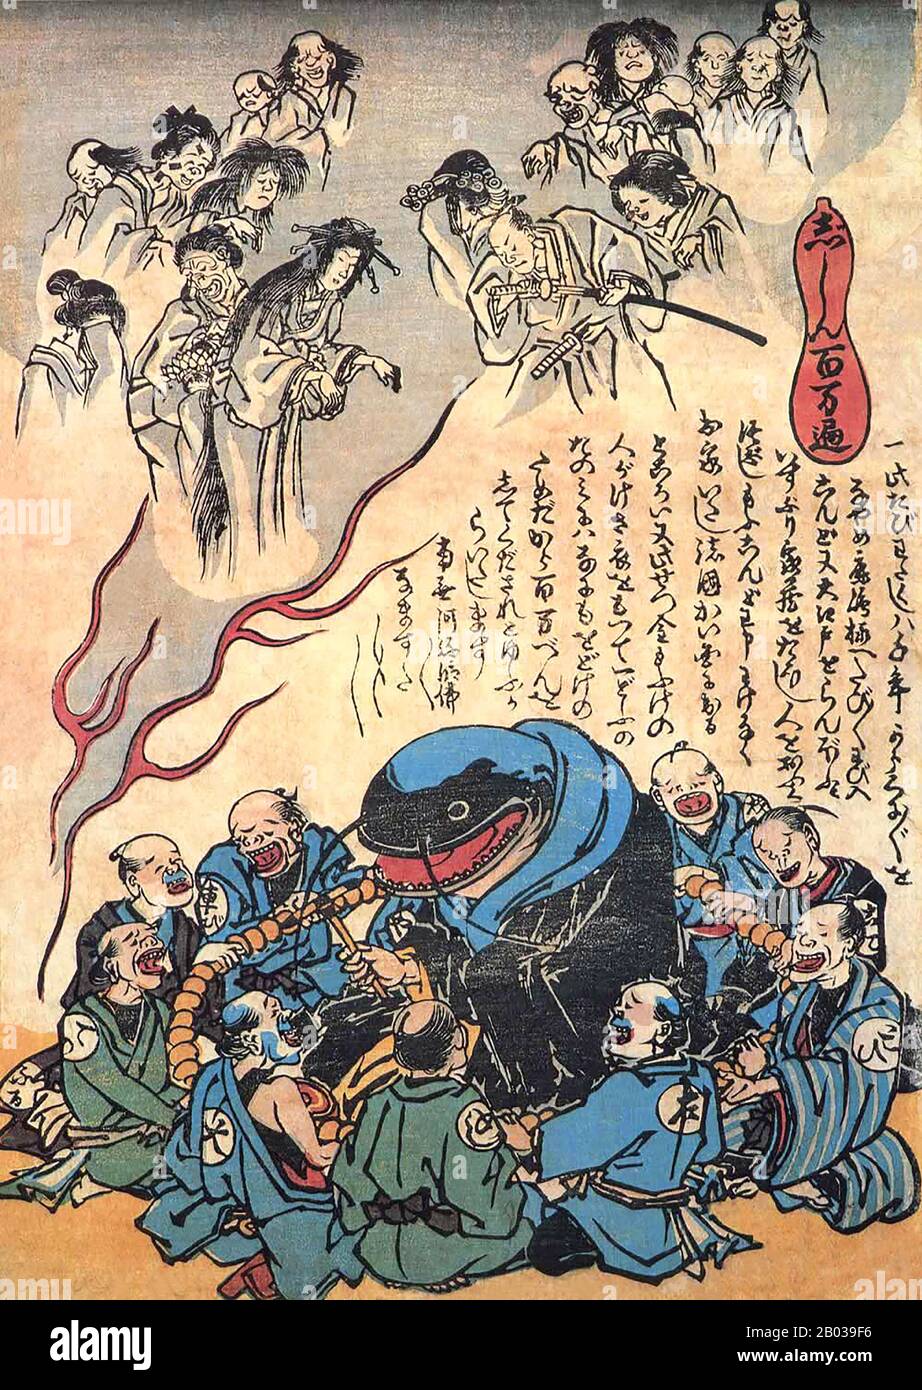 Il Namazu, chiamato anche l'Onamazu, è una creatura della mitologia giapponese e racconti. Il Namazu è un gigantesco pesce gatto che si dice causare terremoti e tremori. Vivendo nel fango sotto le isole giapponesi, il Namazu è custodito dal dio protettore Kashima, che trattiene il pesce gatto utilizzando la roccia kaname-ishi. Quando Kashima lascia giù la sua guardia, Namazu si spascia e provoca violenti terremoti. Il Namazu divenne famoso e popolare dopo i grandi terremoti di Ansei che accadde nei pressi di Edo nel 1855. Questo porta al Namazu essere adorato come un dio di rettificazione del mondo (yonaoshi daimy Foto Stock